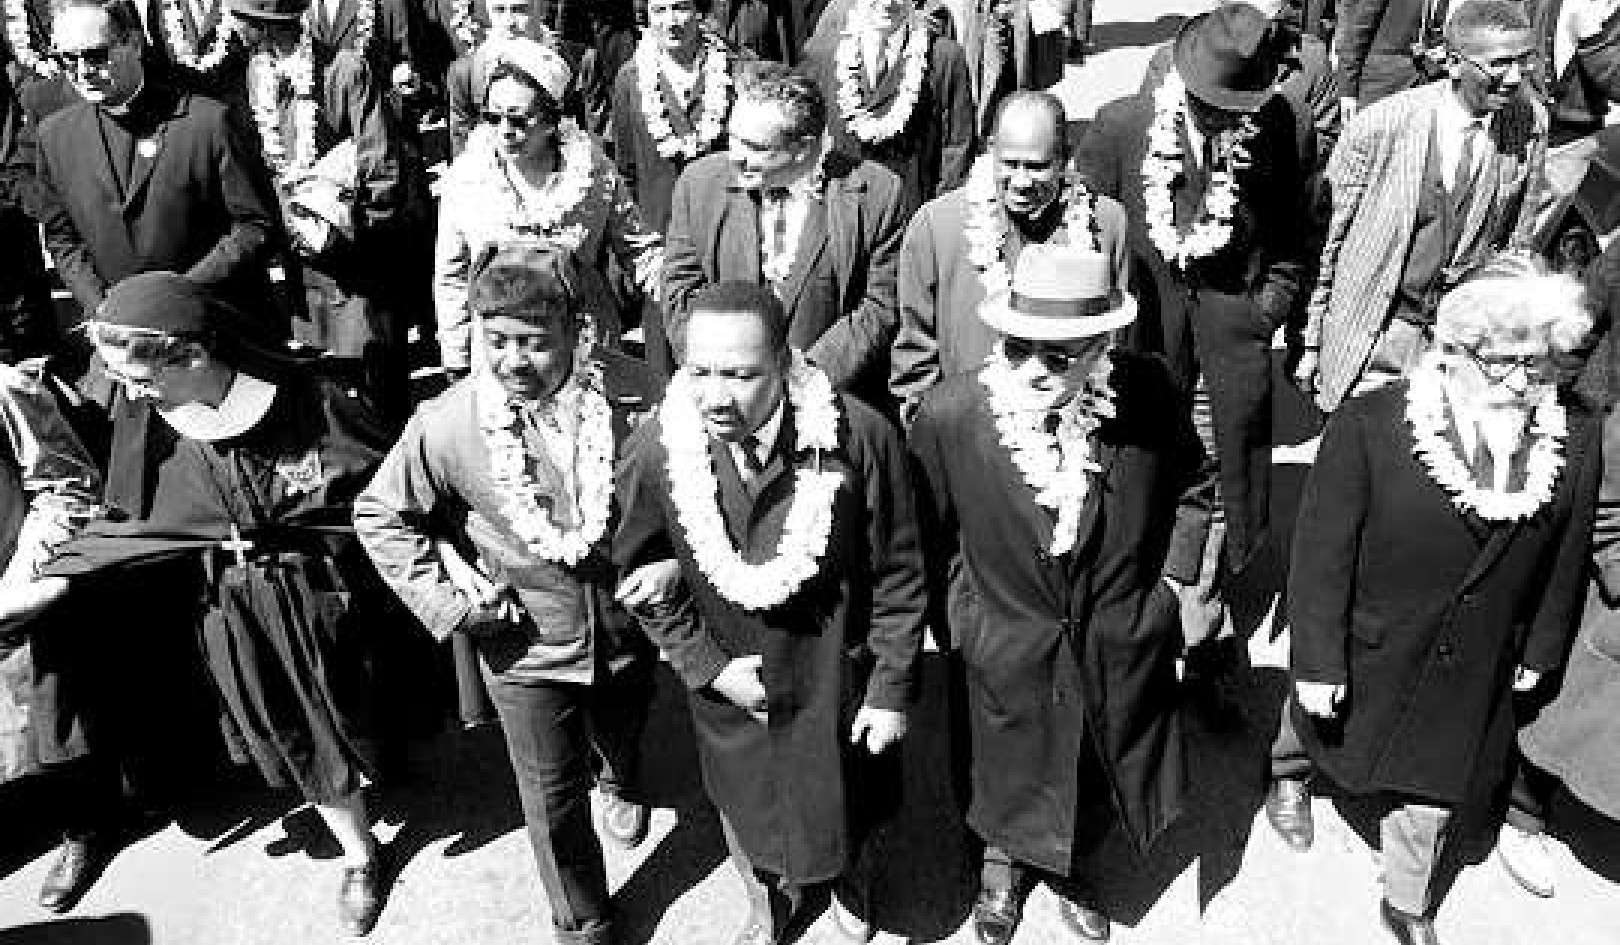 Το Όραμα της MLK για την Κοινωνική Δικαιοσύνη περιελάμβανε έναν Οίκο πολλών θρησκειών